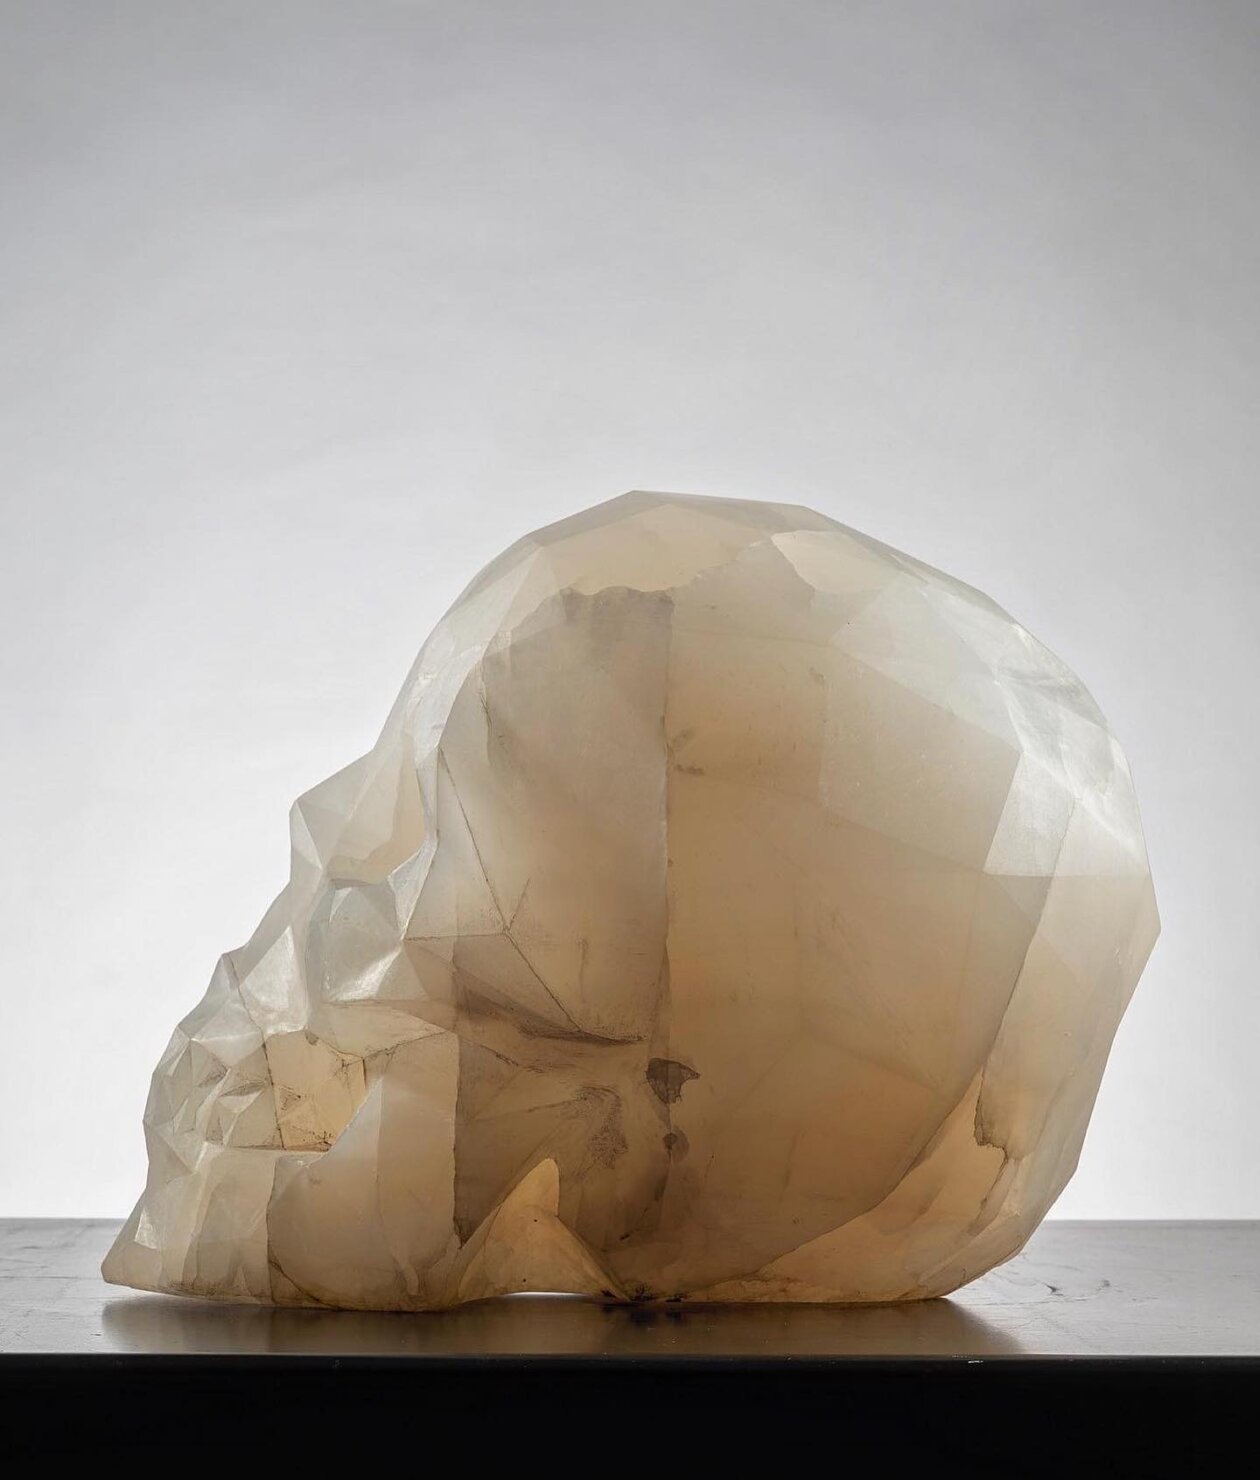 Diamond, A Skull Marble Sculpture By Massimiliano Pelletti (2)